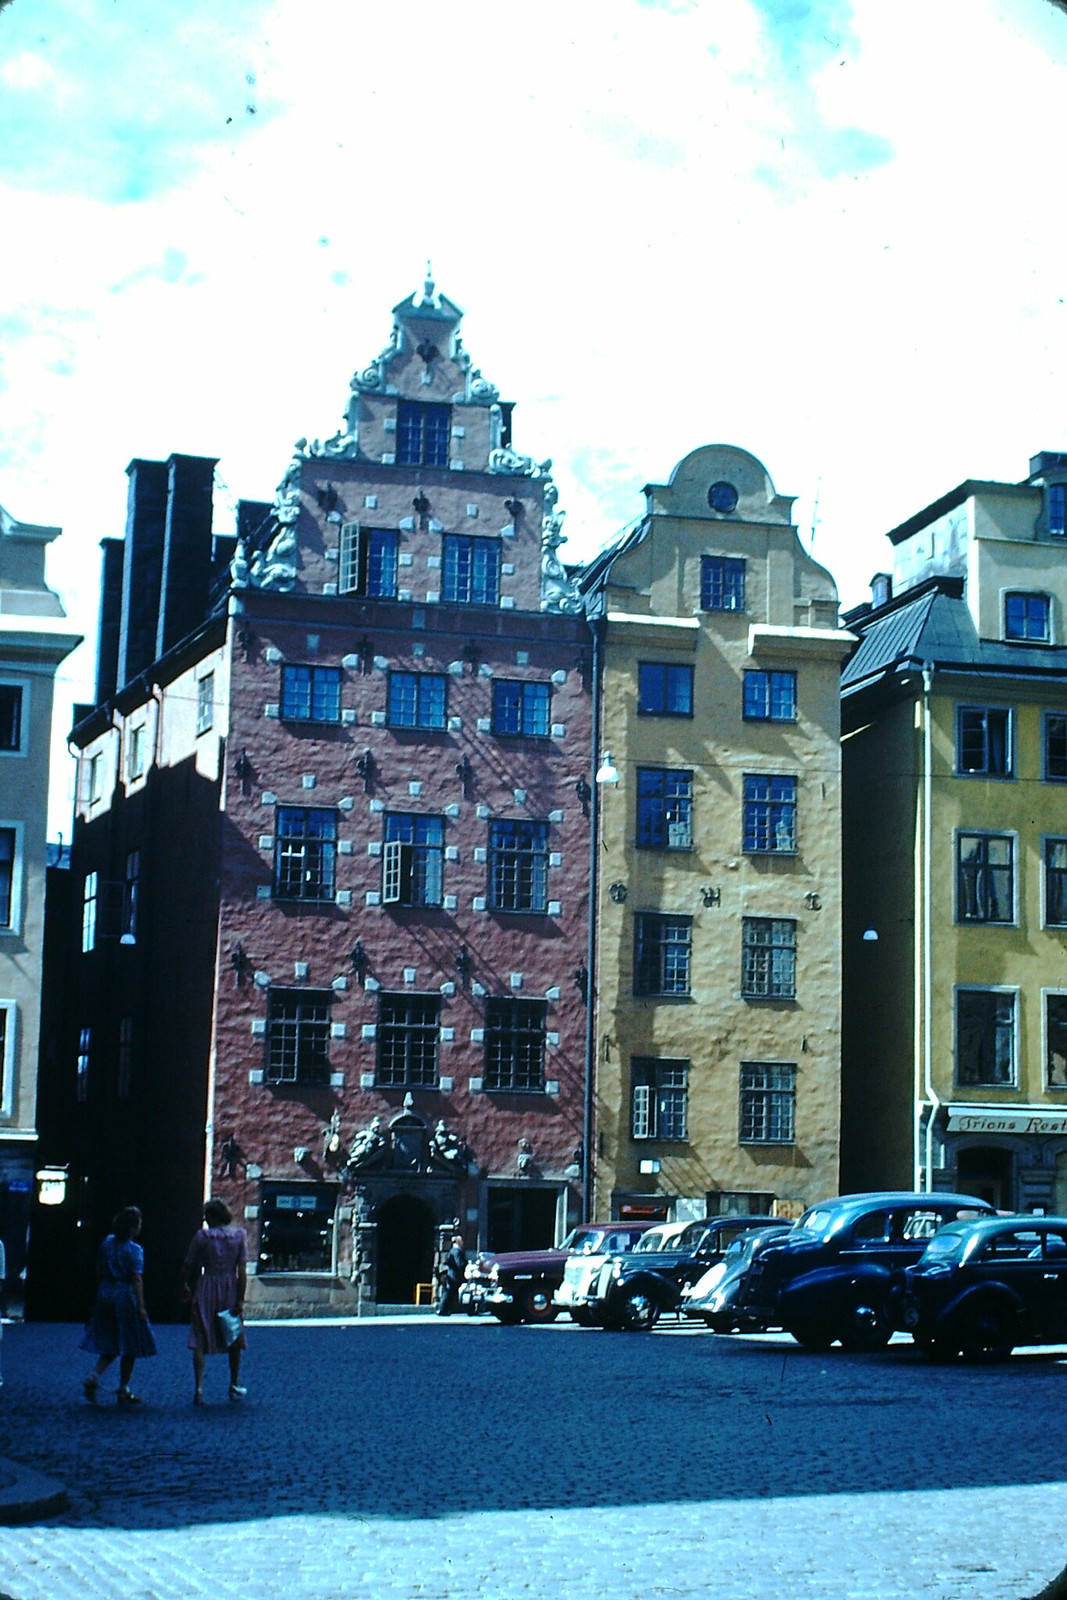 Old Town Square, Stockholm, Sweden, 1949.